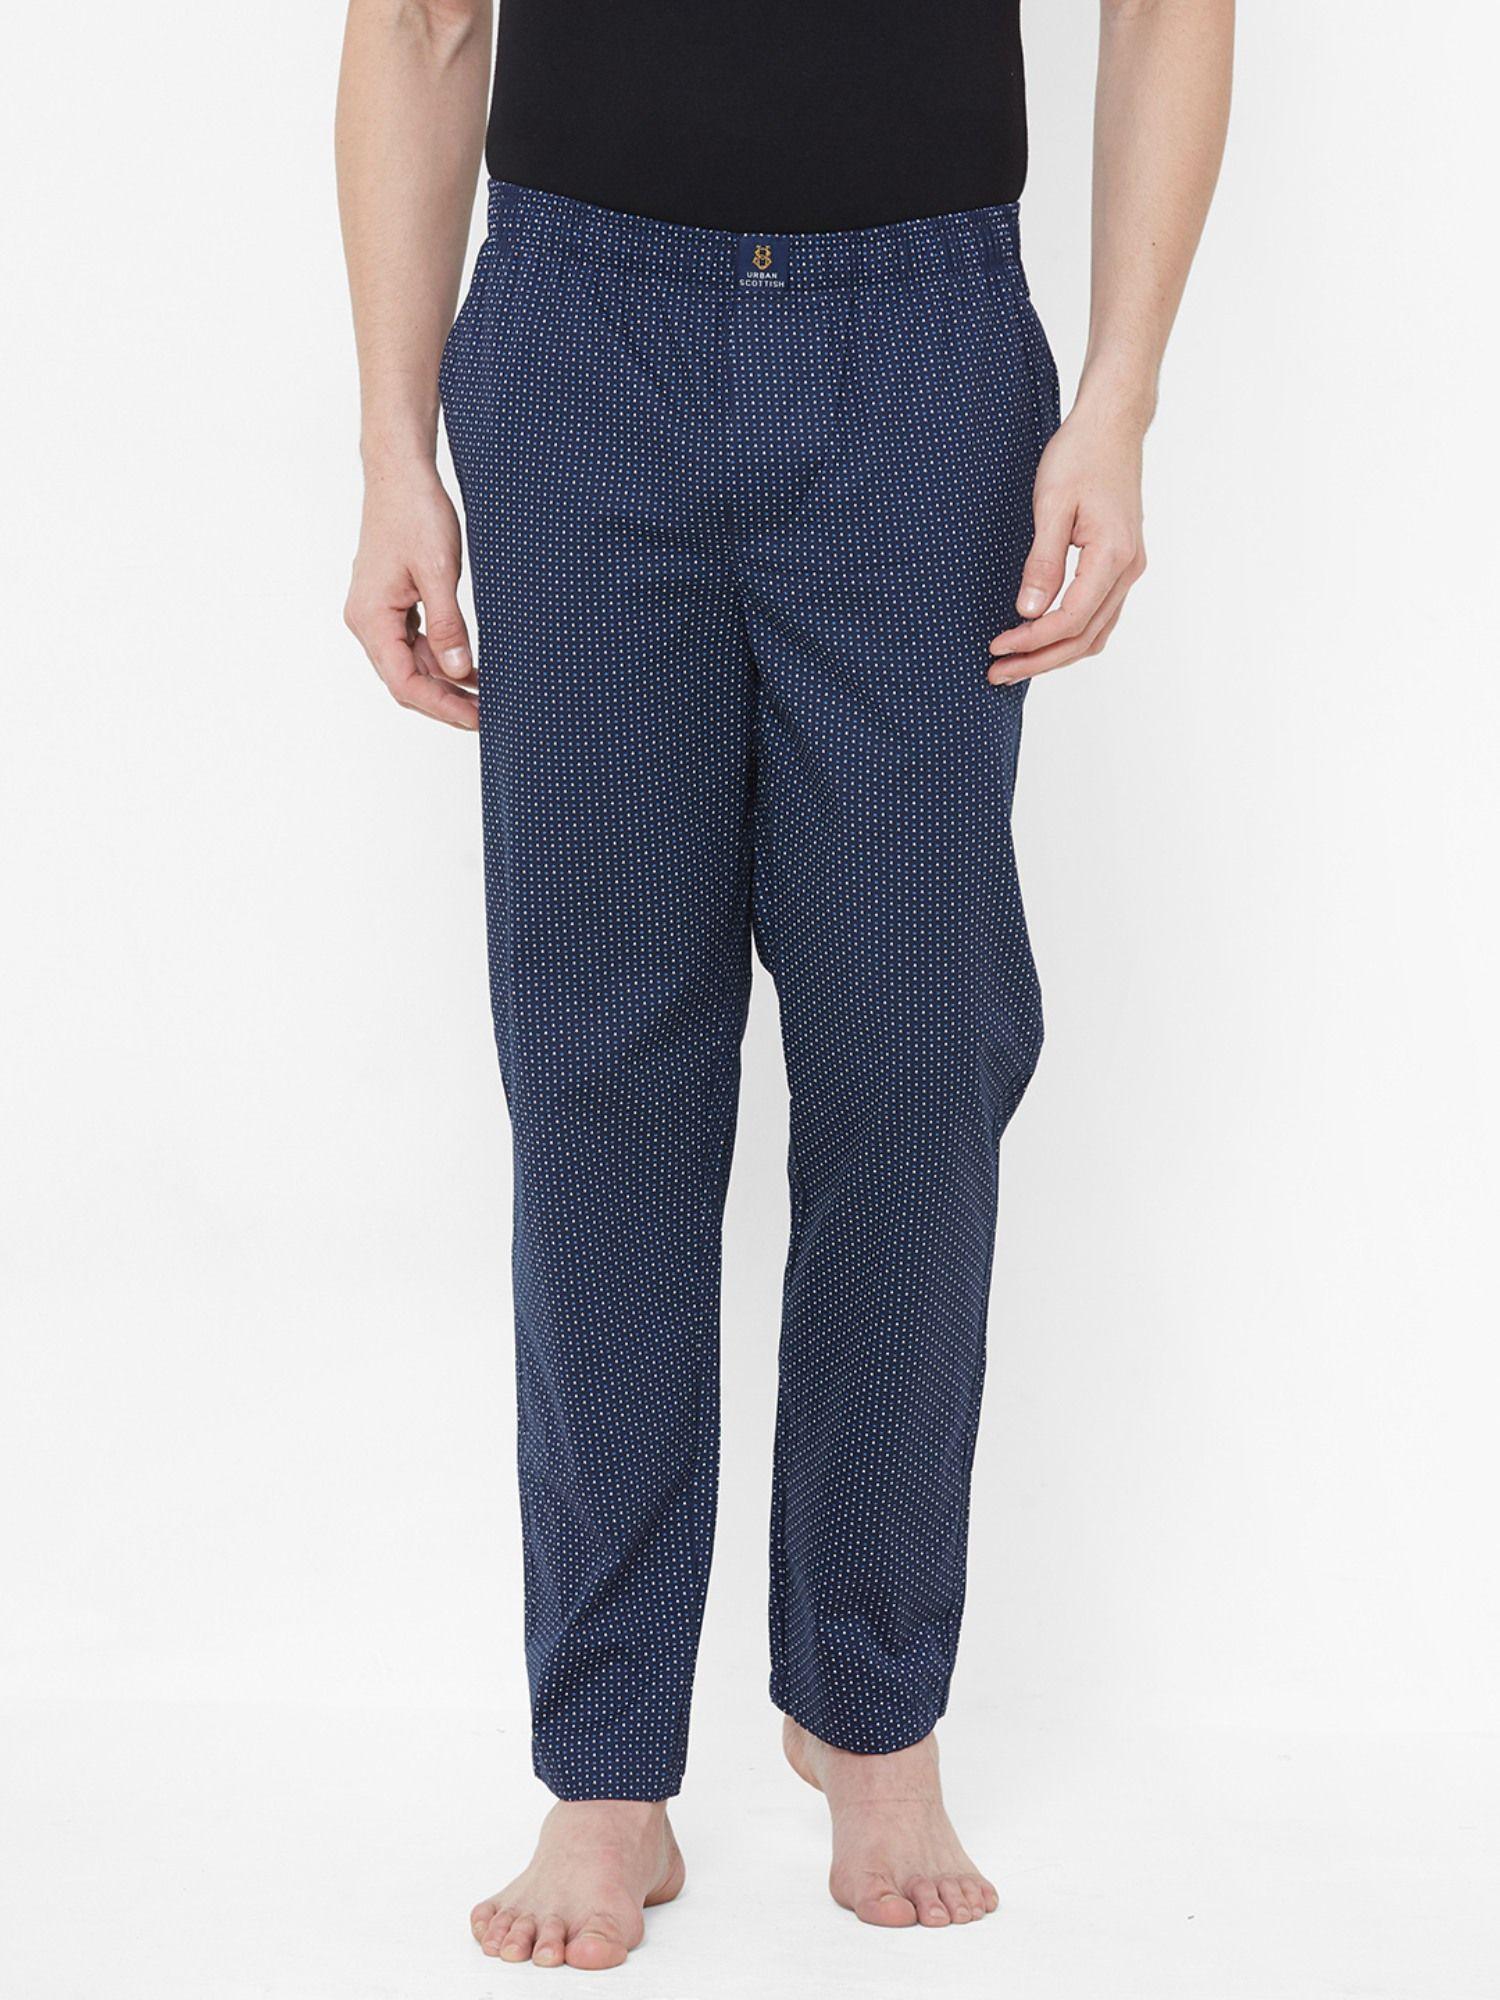 mens navy blue pure cotton printed pyjama